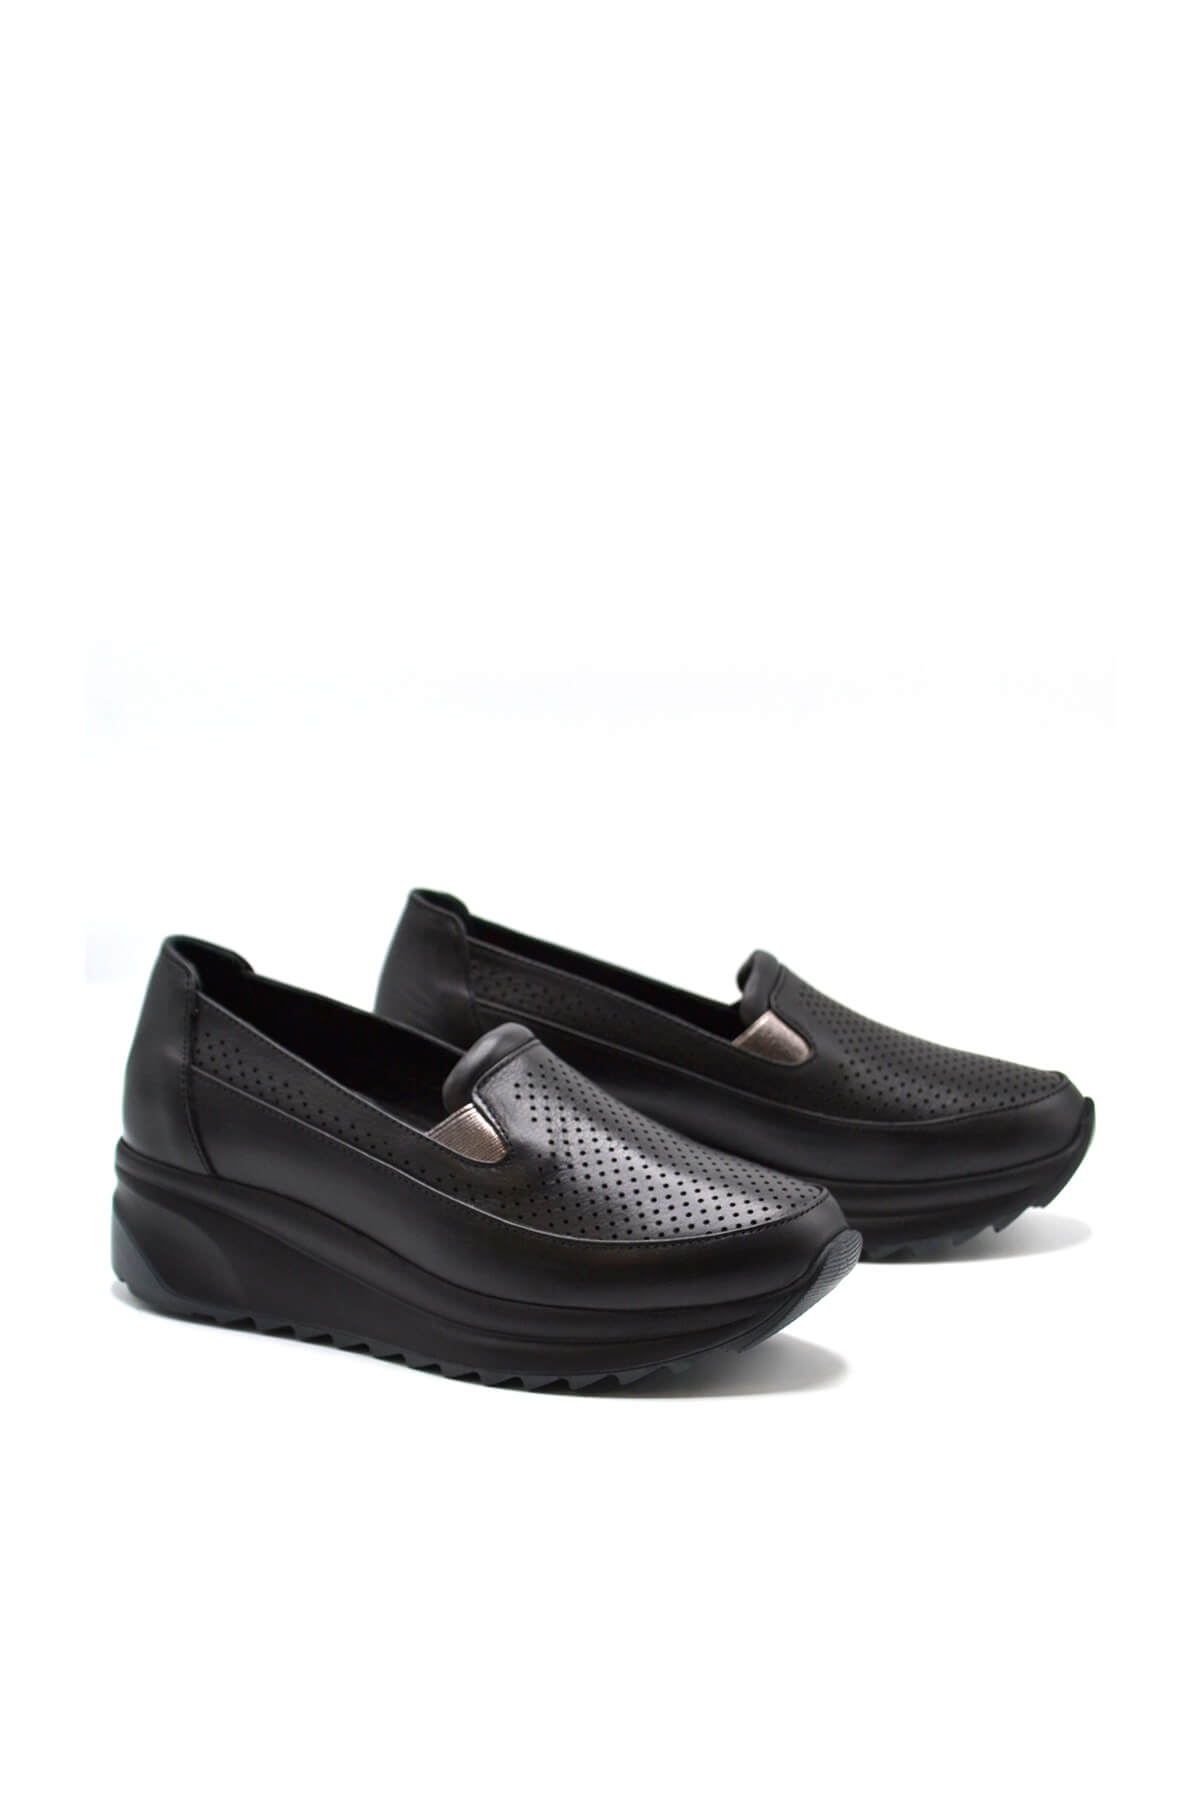 Kadın Dolgu Topuk Deri Sneakers Siyah 2310302Y - Thumbnail